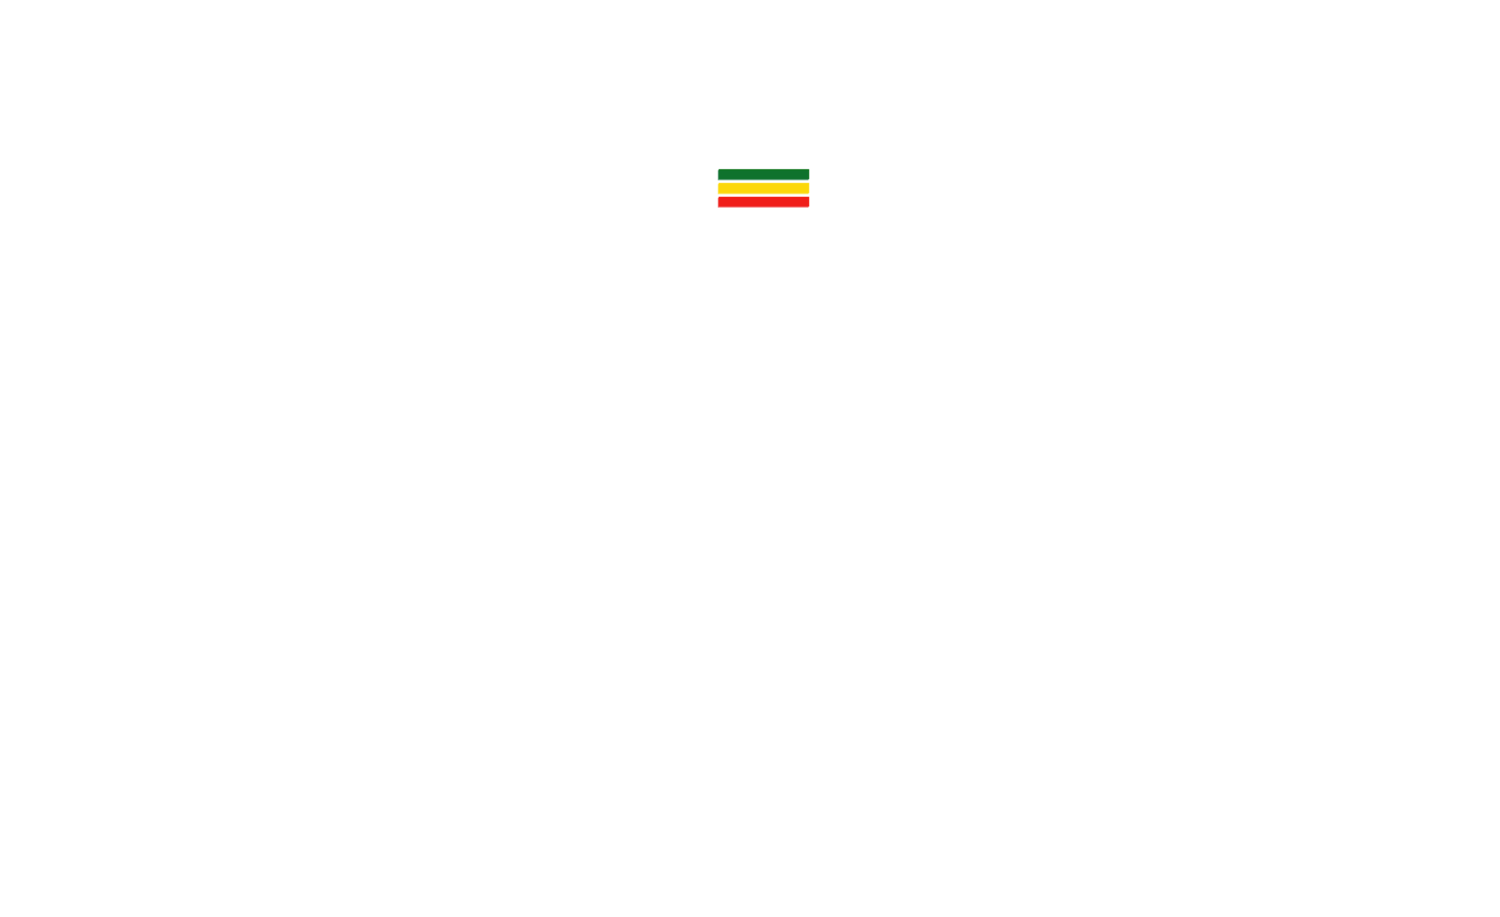 Dr Pier Gallo